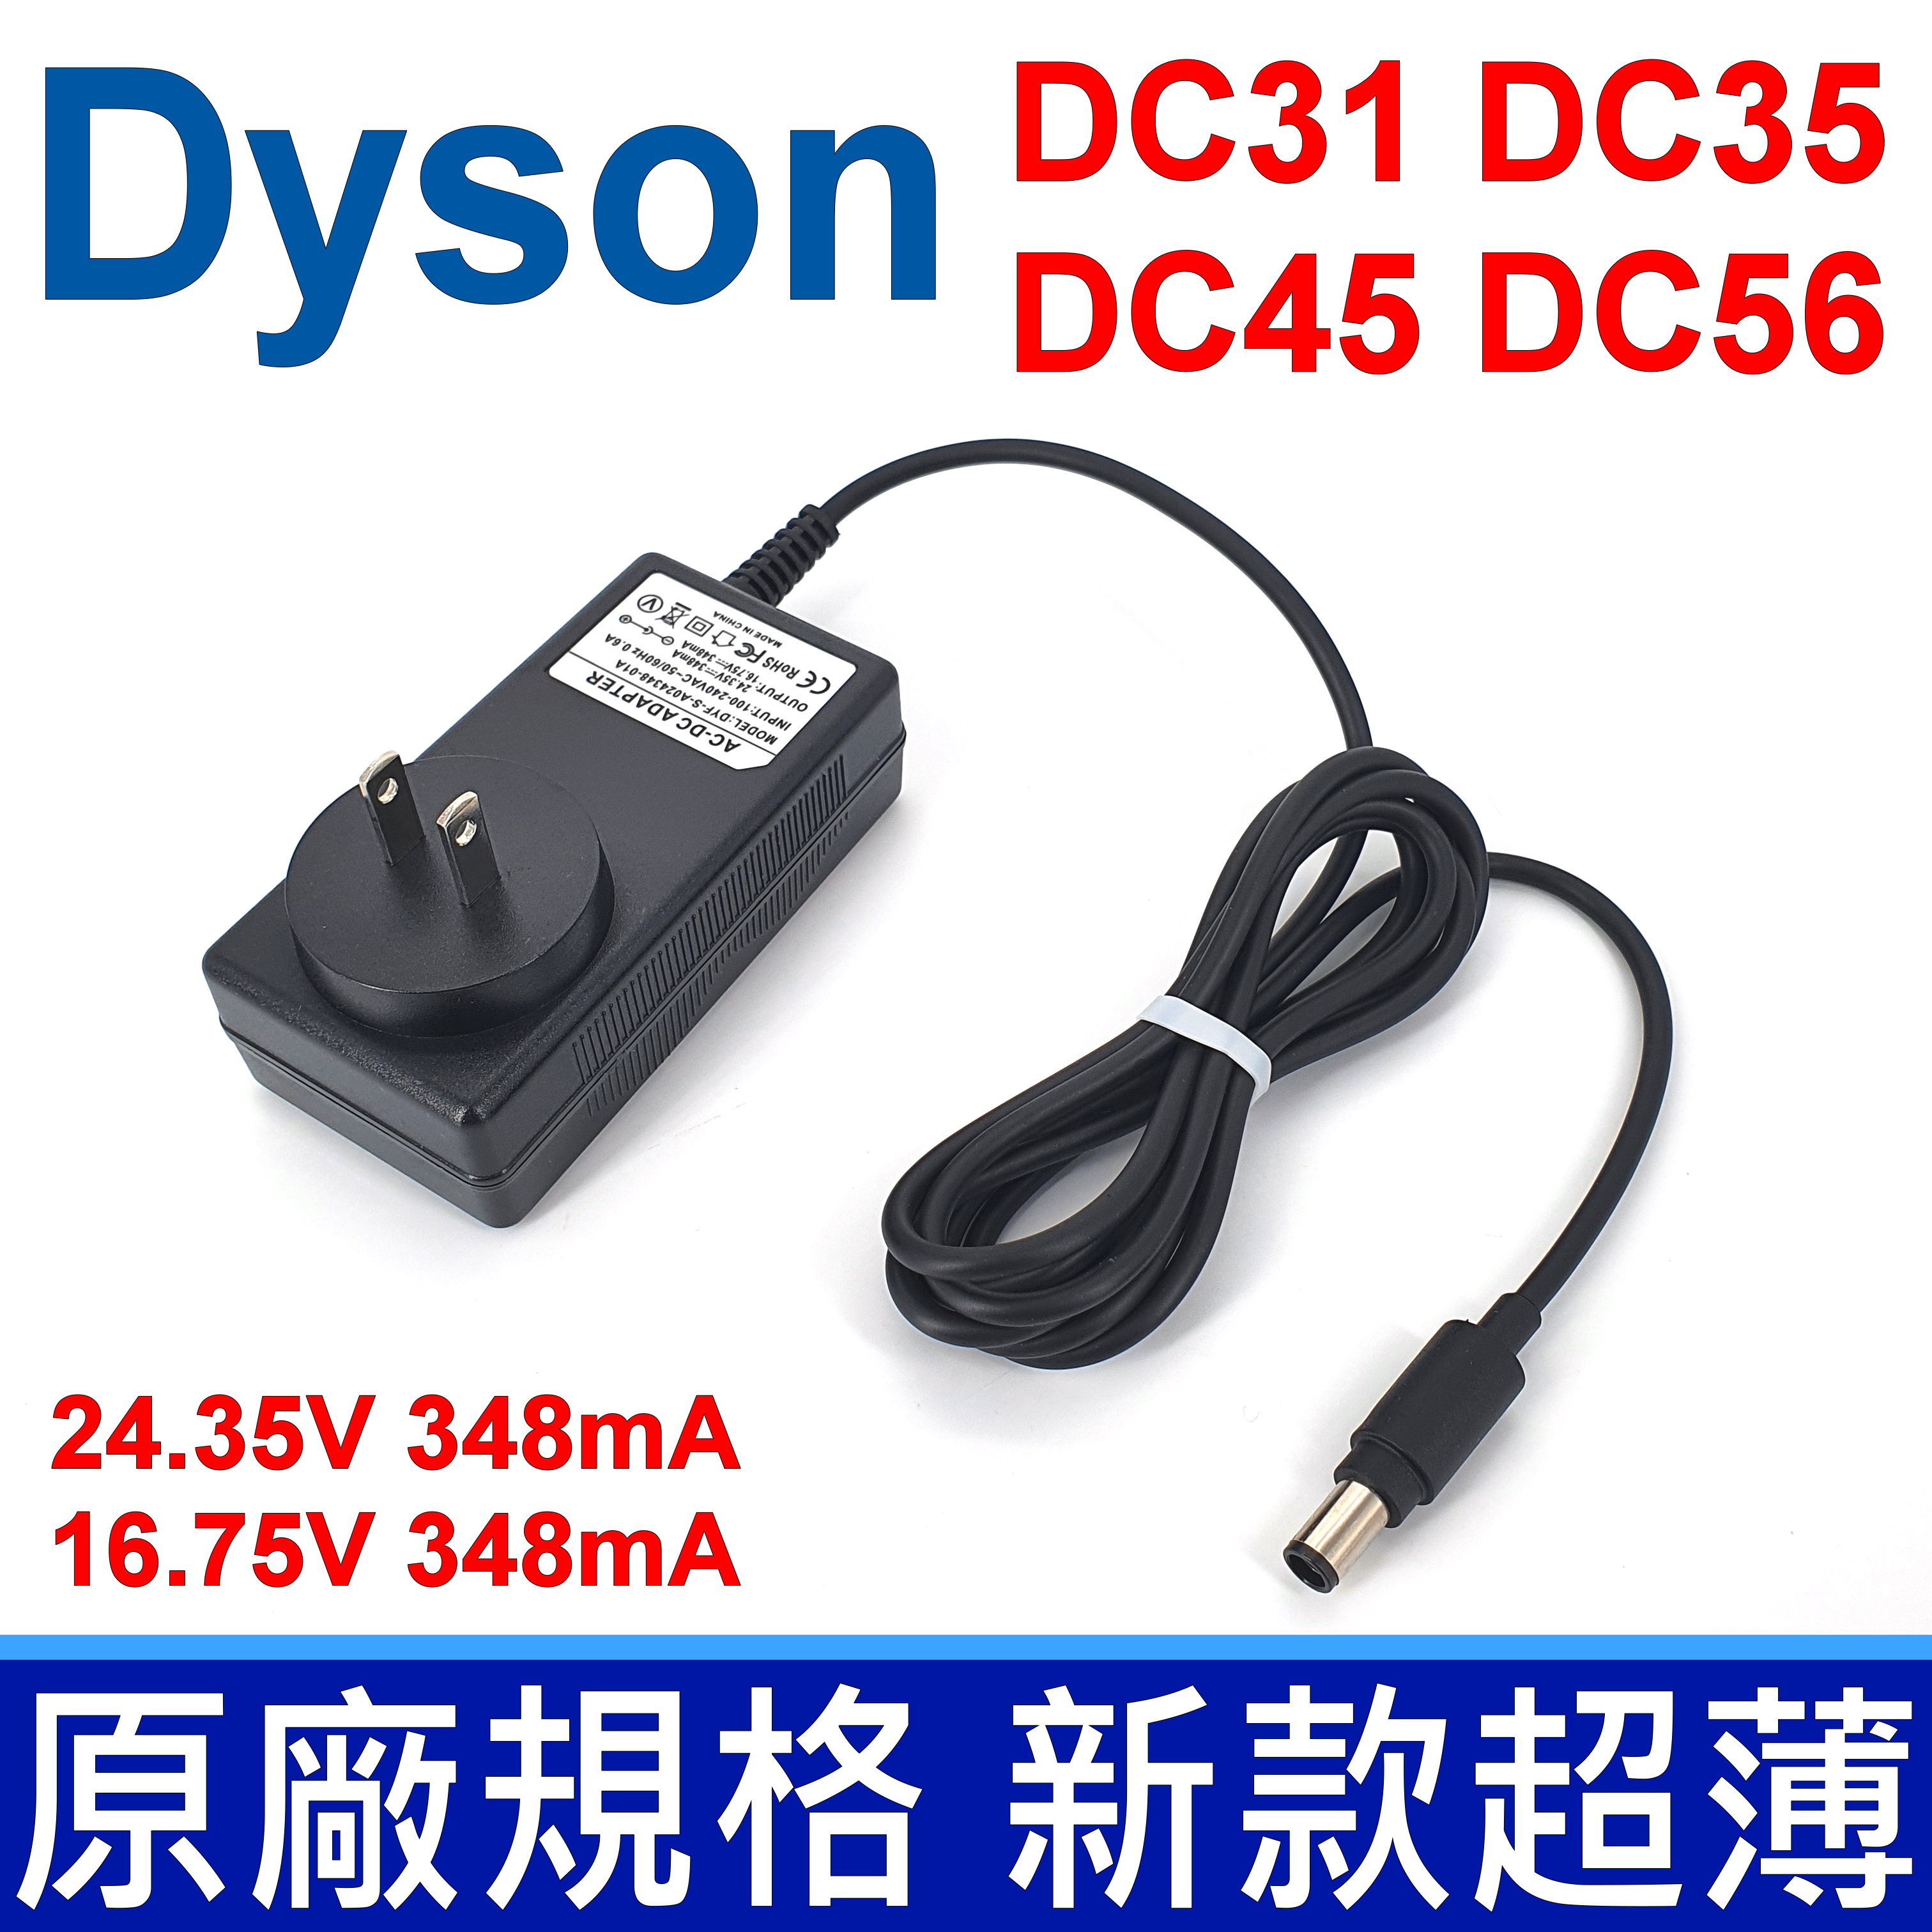 戴森 Dyson 吸塵器 專用 原廠 規格 充電器 變壓器 DYF-S-A024348-01A DC30 DC31 DC34 DC35 DC44 DC45 DC56 DC57